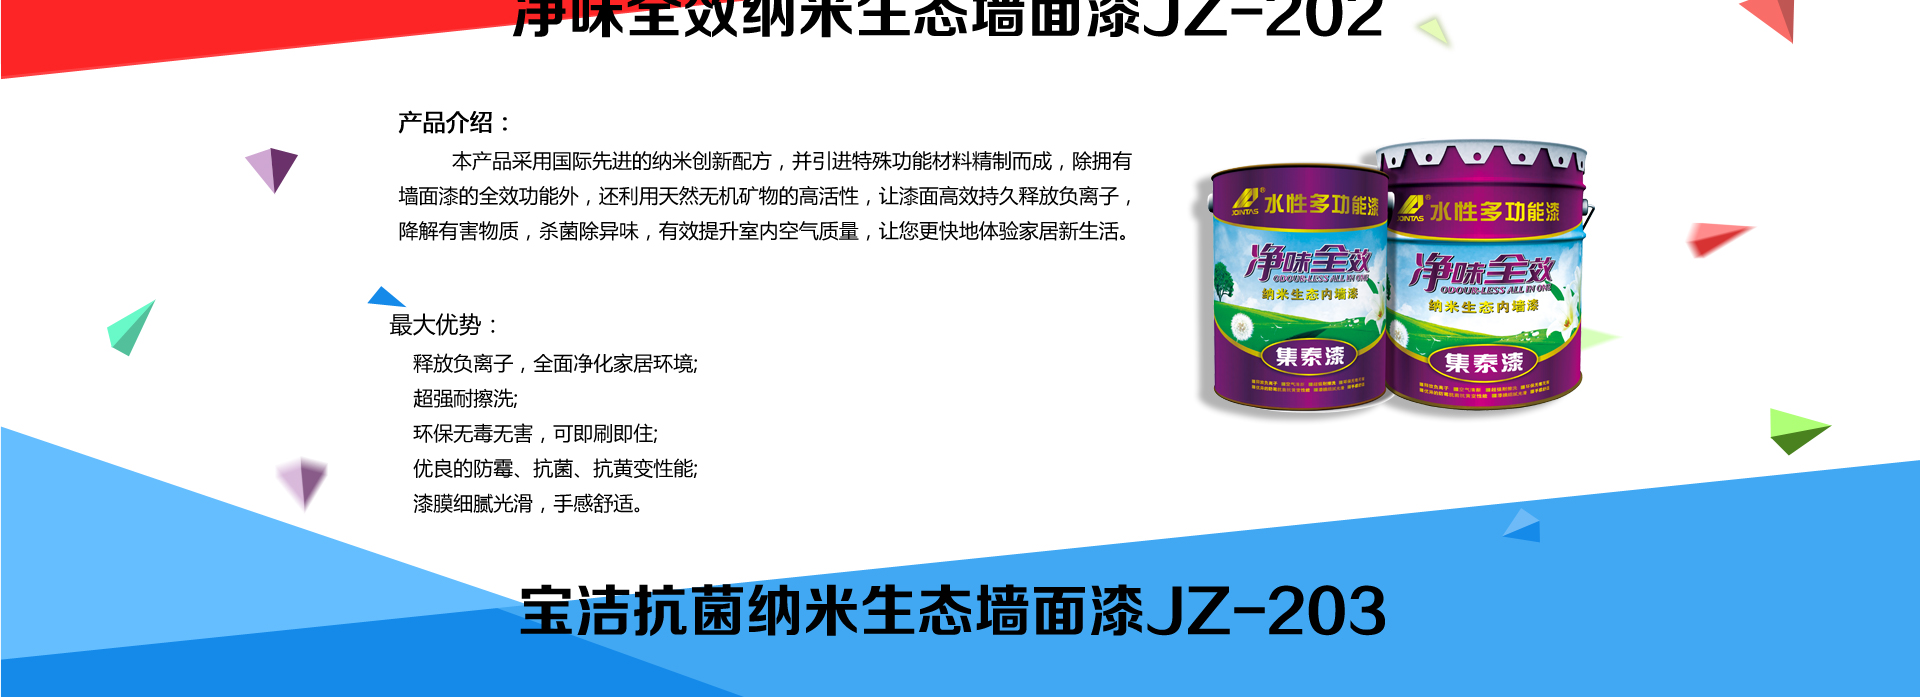 广州集泰化工股份有限公司---国内水性涂料行业领导者